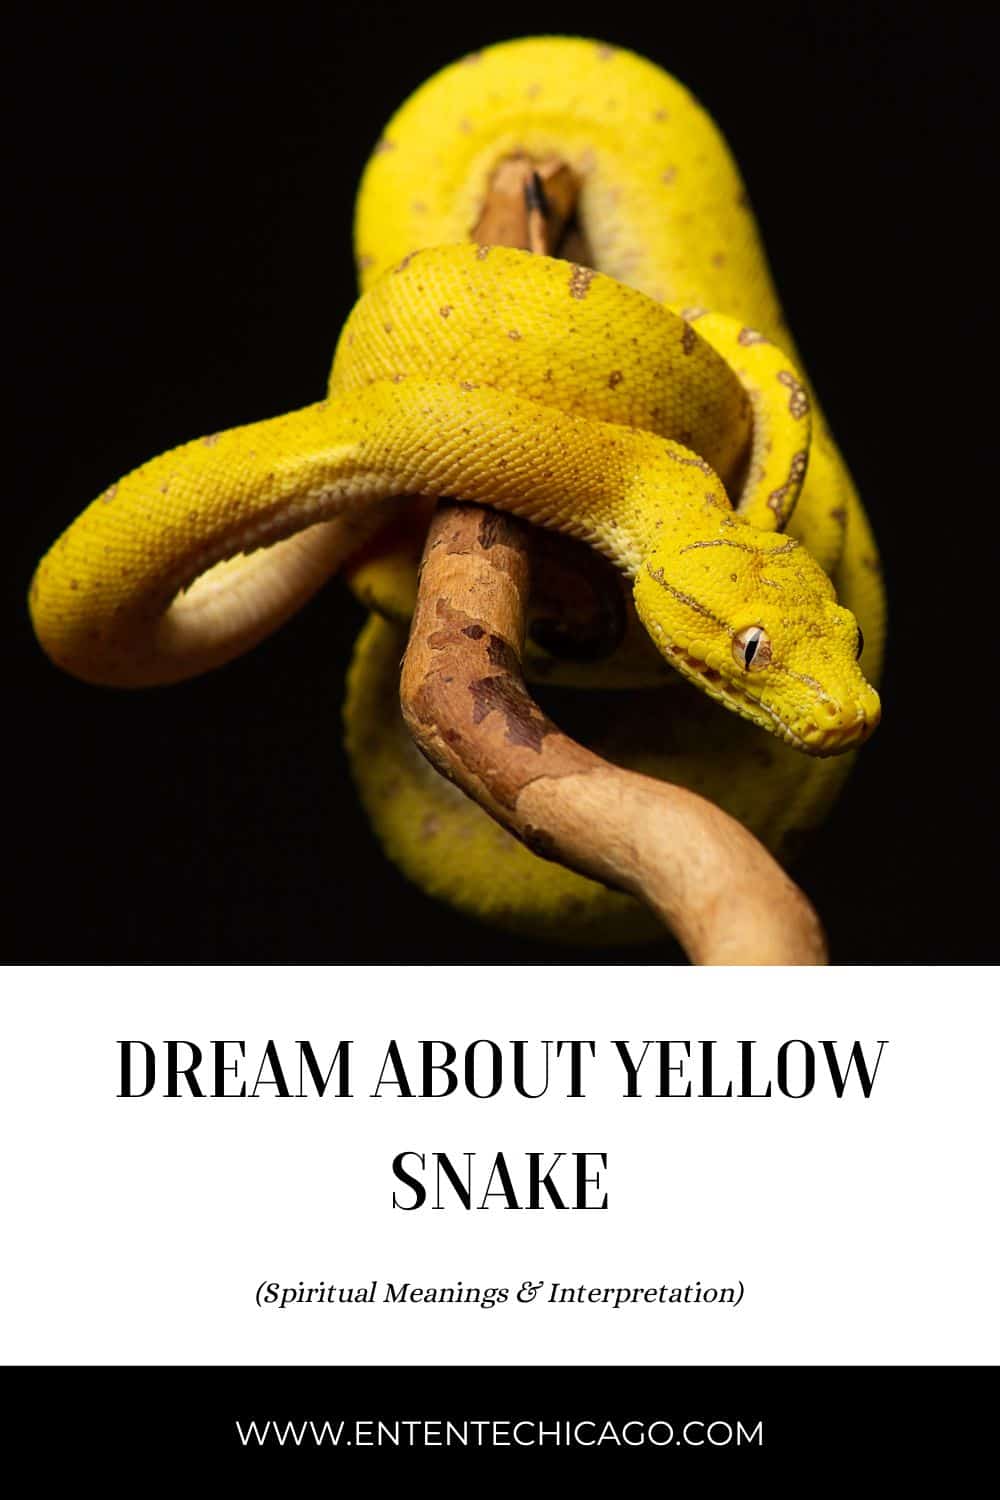  13 पिवळा साप स्वप्न अर्थ लावणे